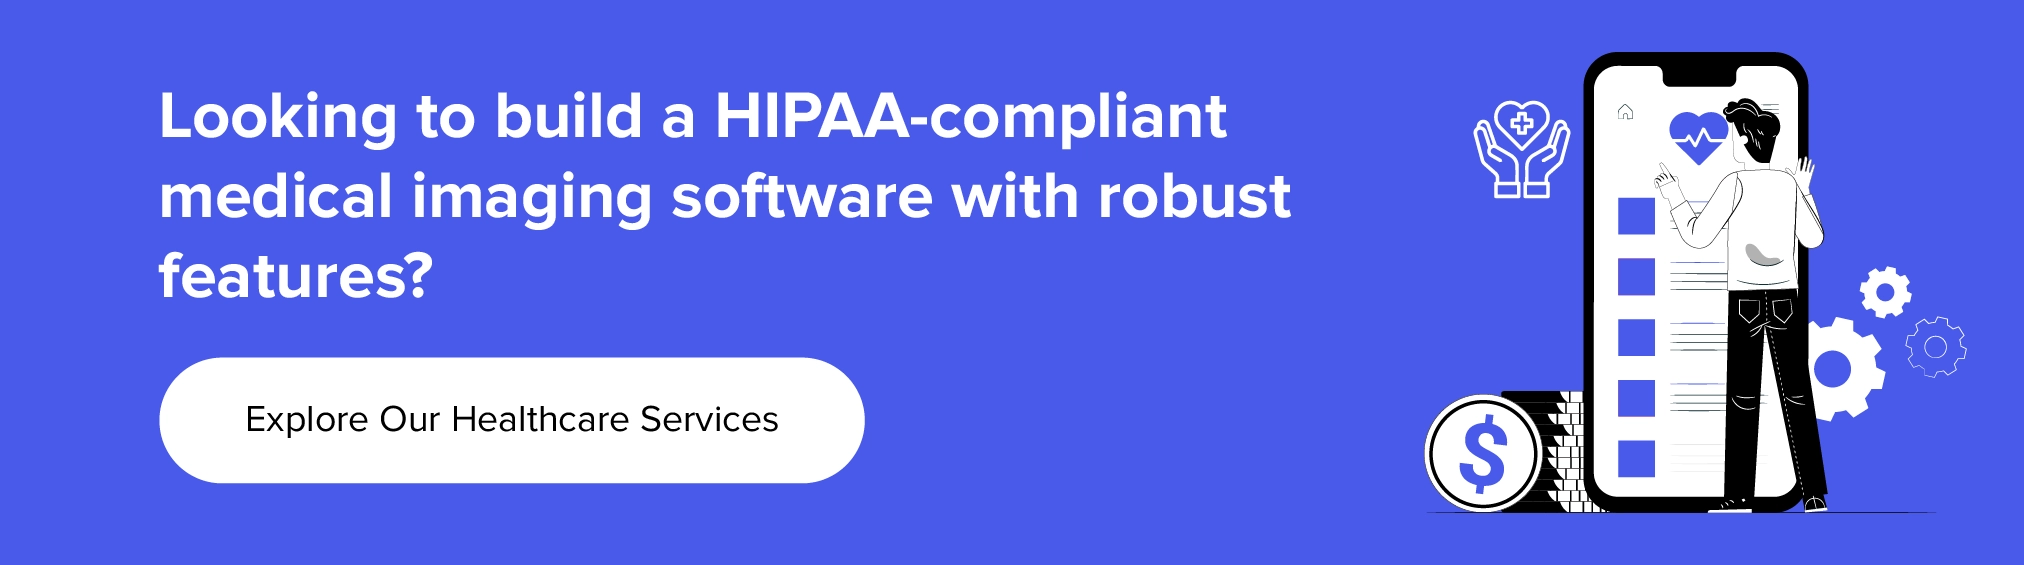 colabore conosco para construir um software de imagens médicas compatível com HIPAA